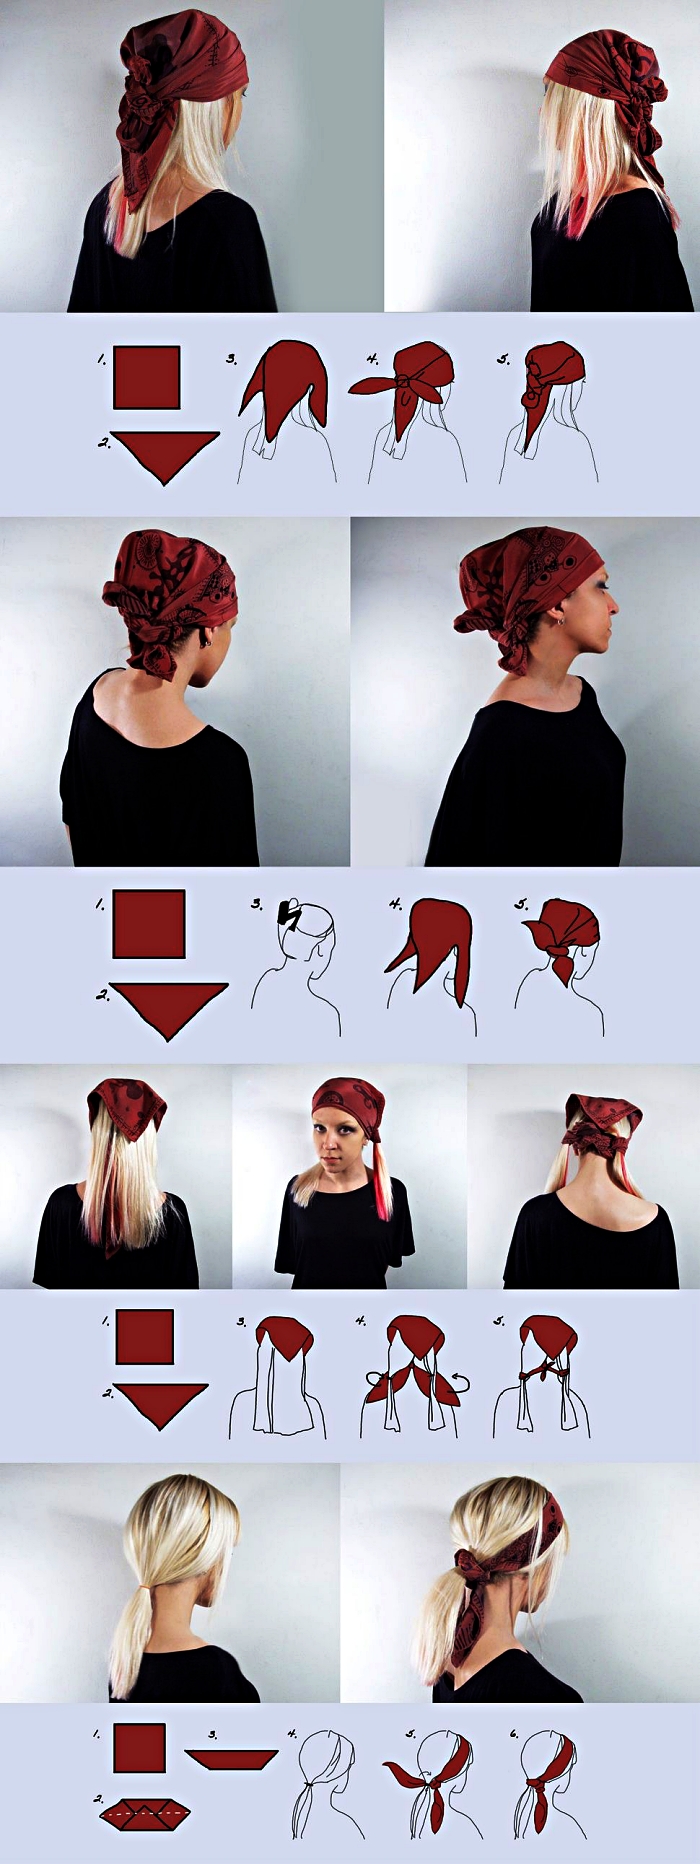 idée de coiffure de pirate avec foulard, tuto pour nouer son foulard de pirate, déguisement pirate femme avec foulard rouge